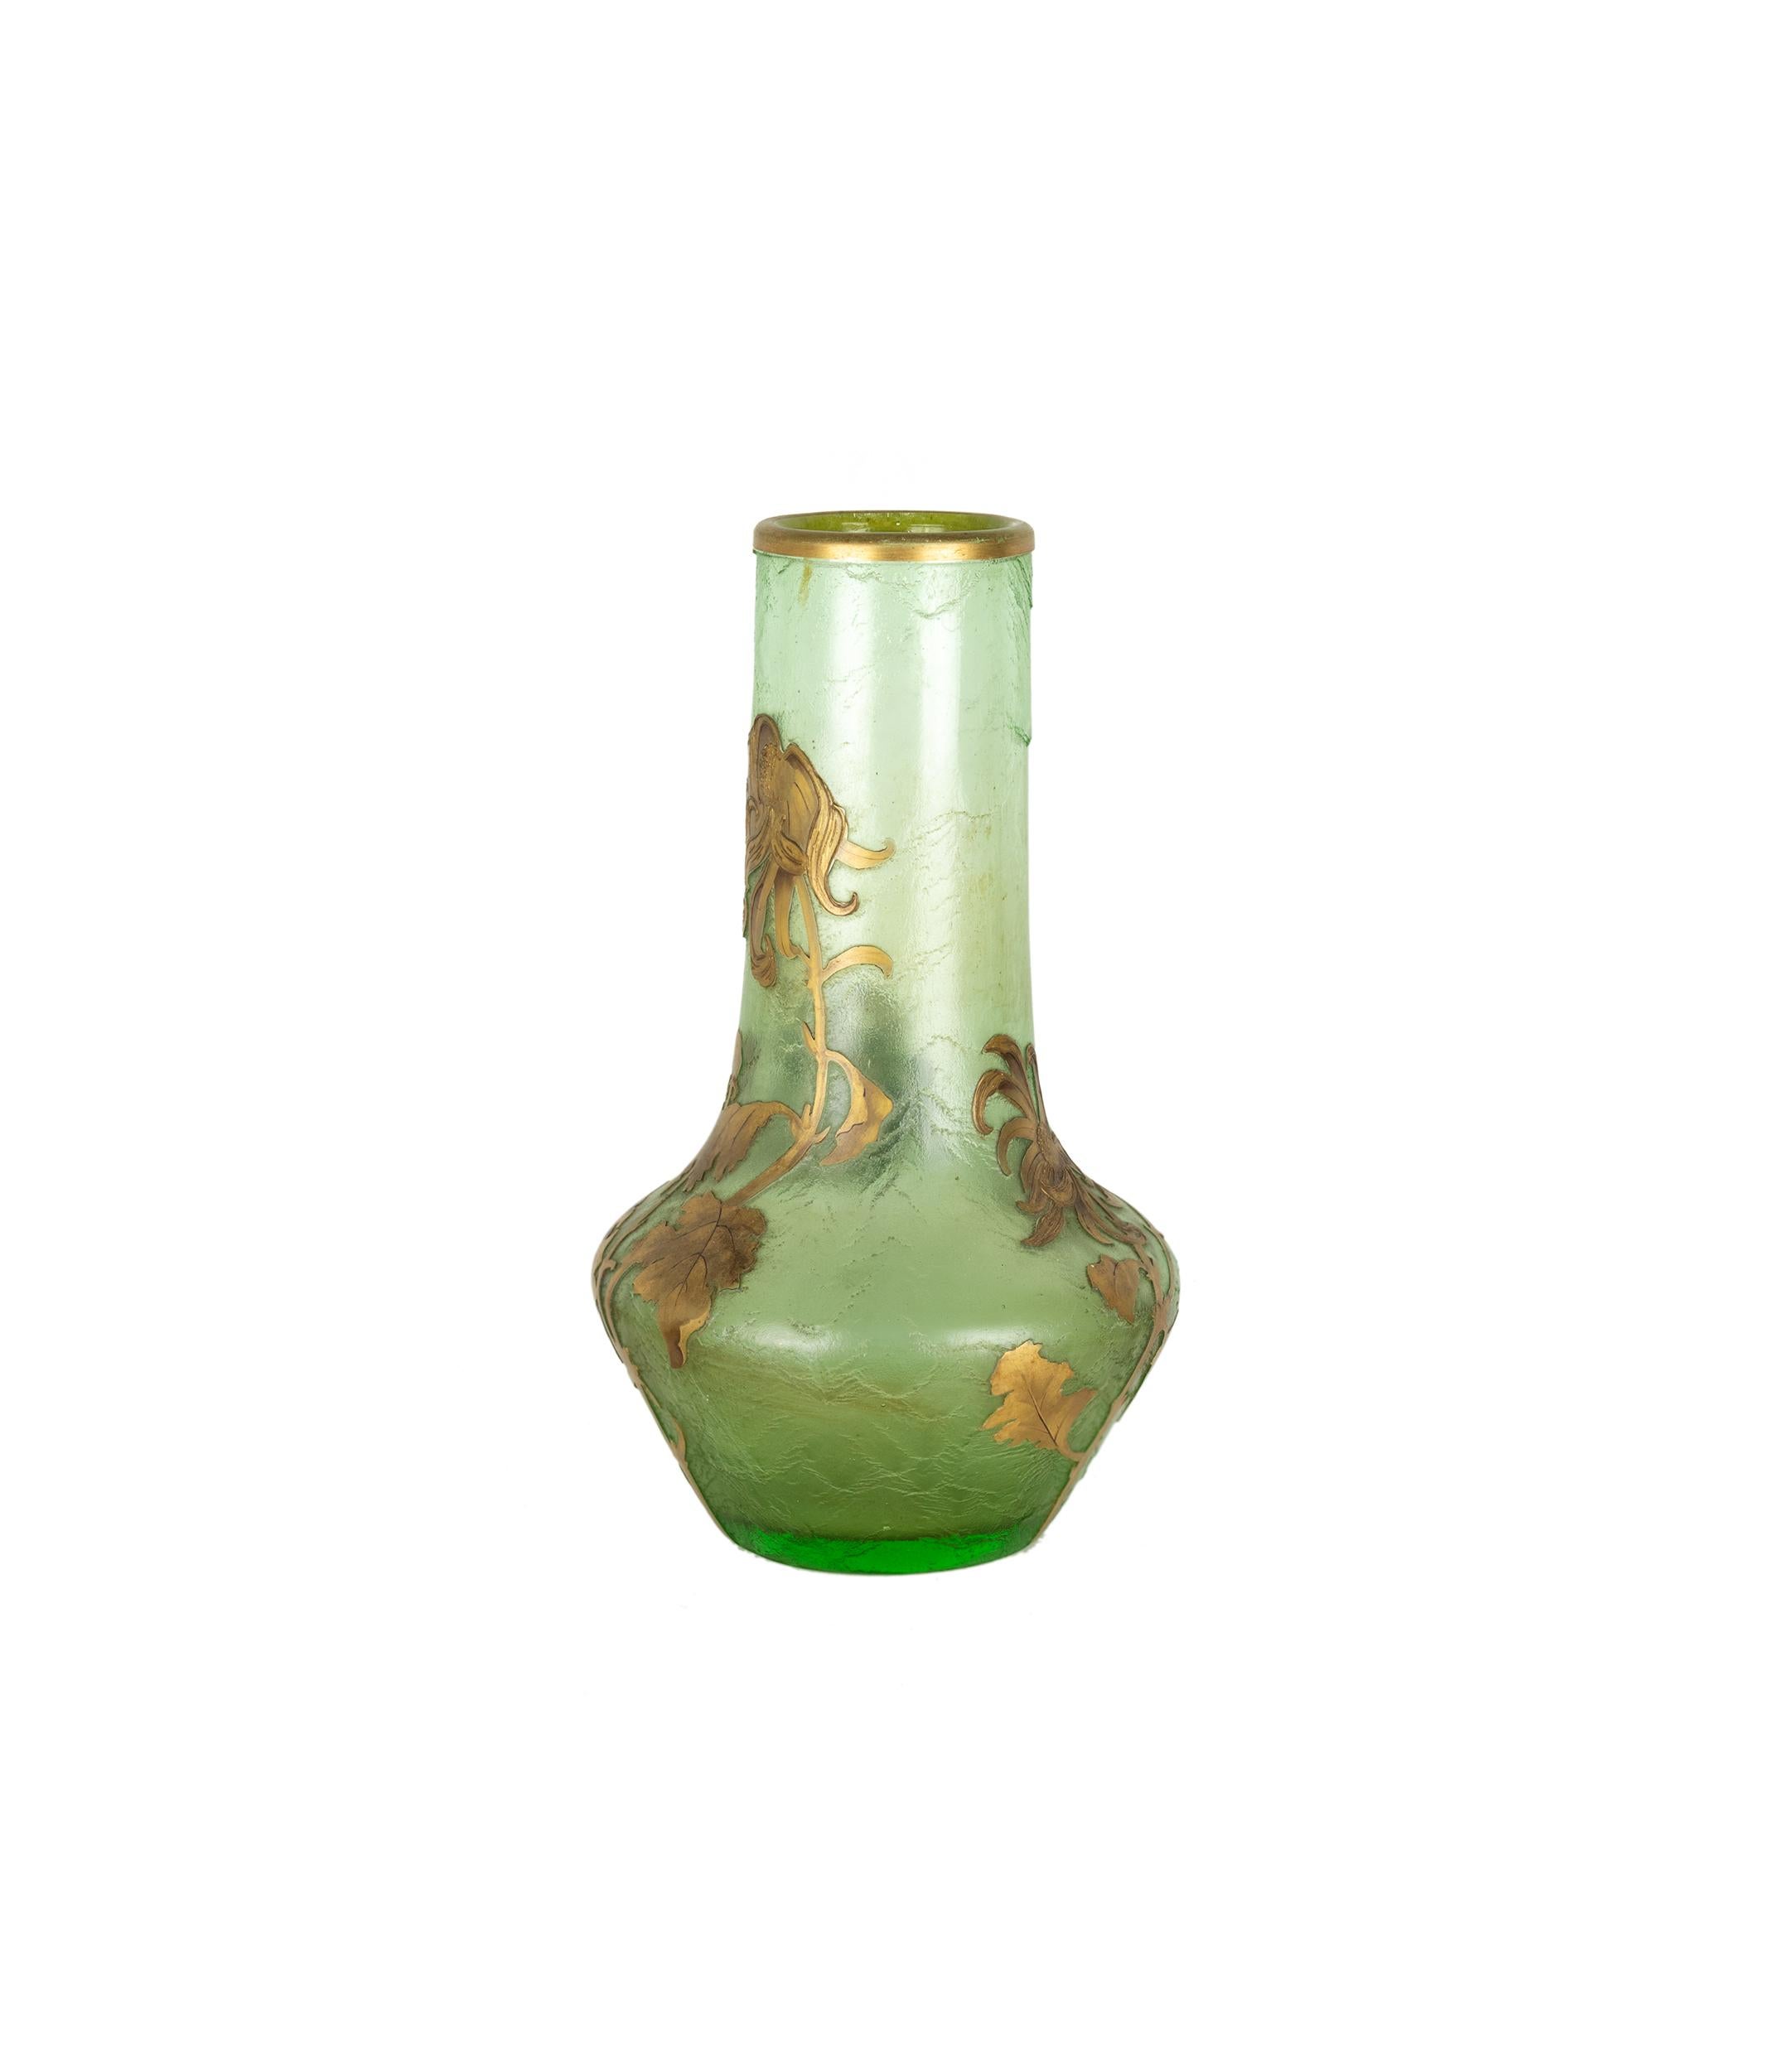 En provenance de Montjoye, France, ce grand vase Art nouveau en verre d'art soufflé à la bouche est décoré de fleurs en émail, doré. 
Daté de 1880-1900 en très bon état. 
Legras 